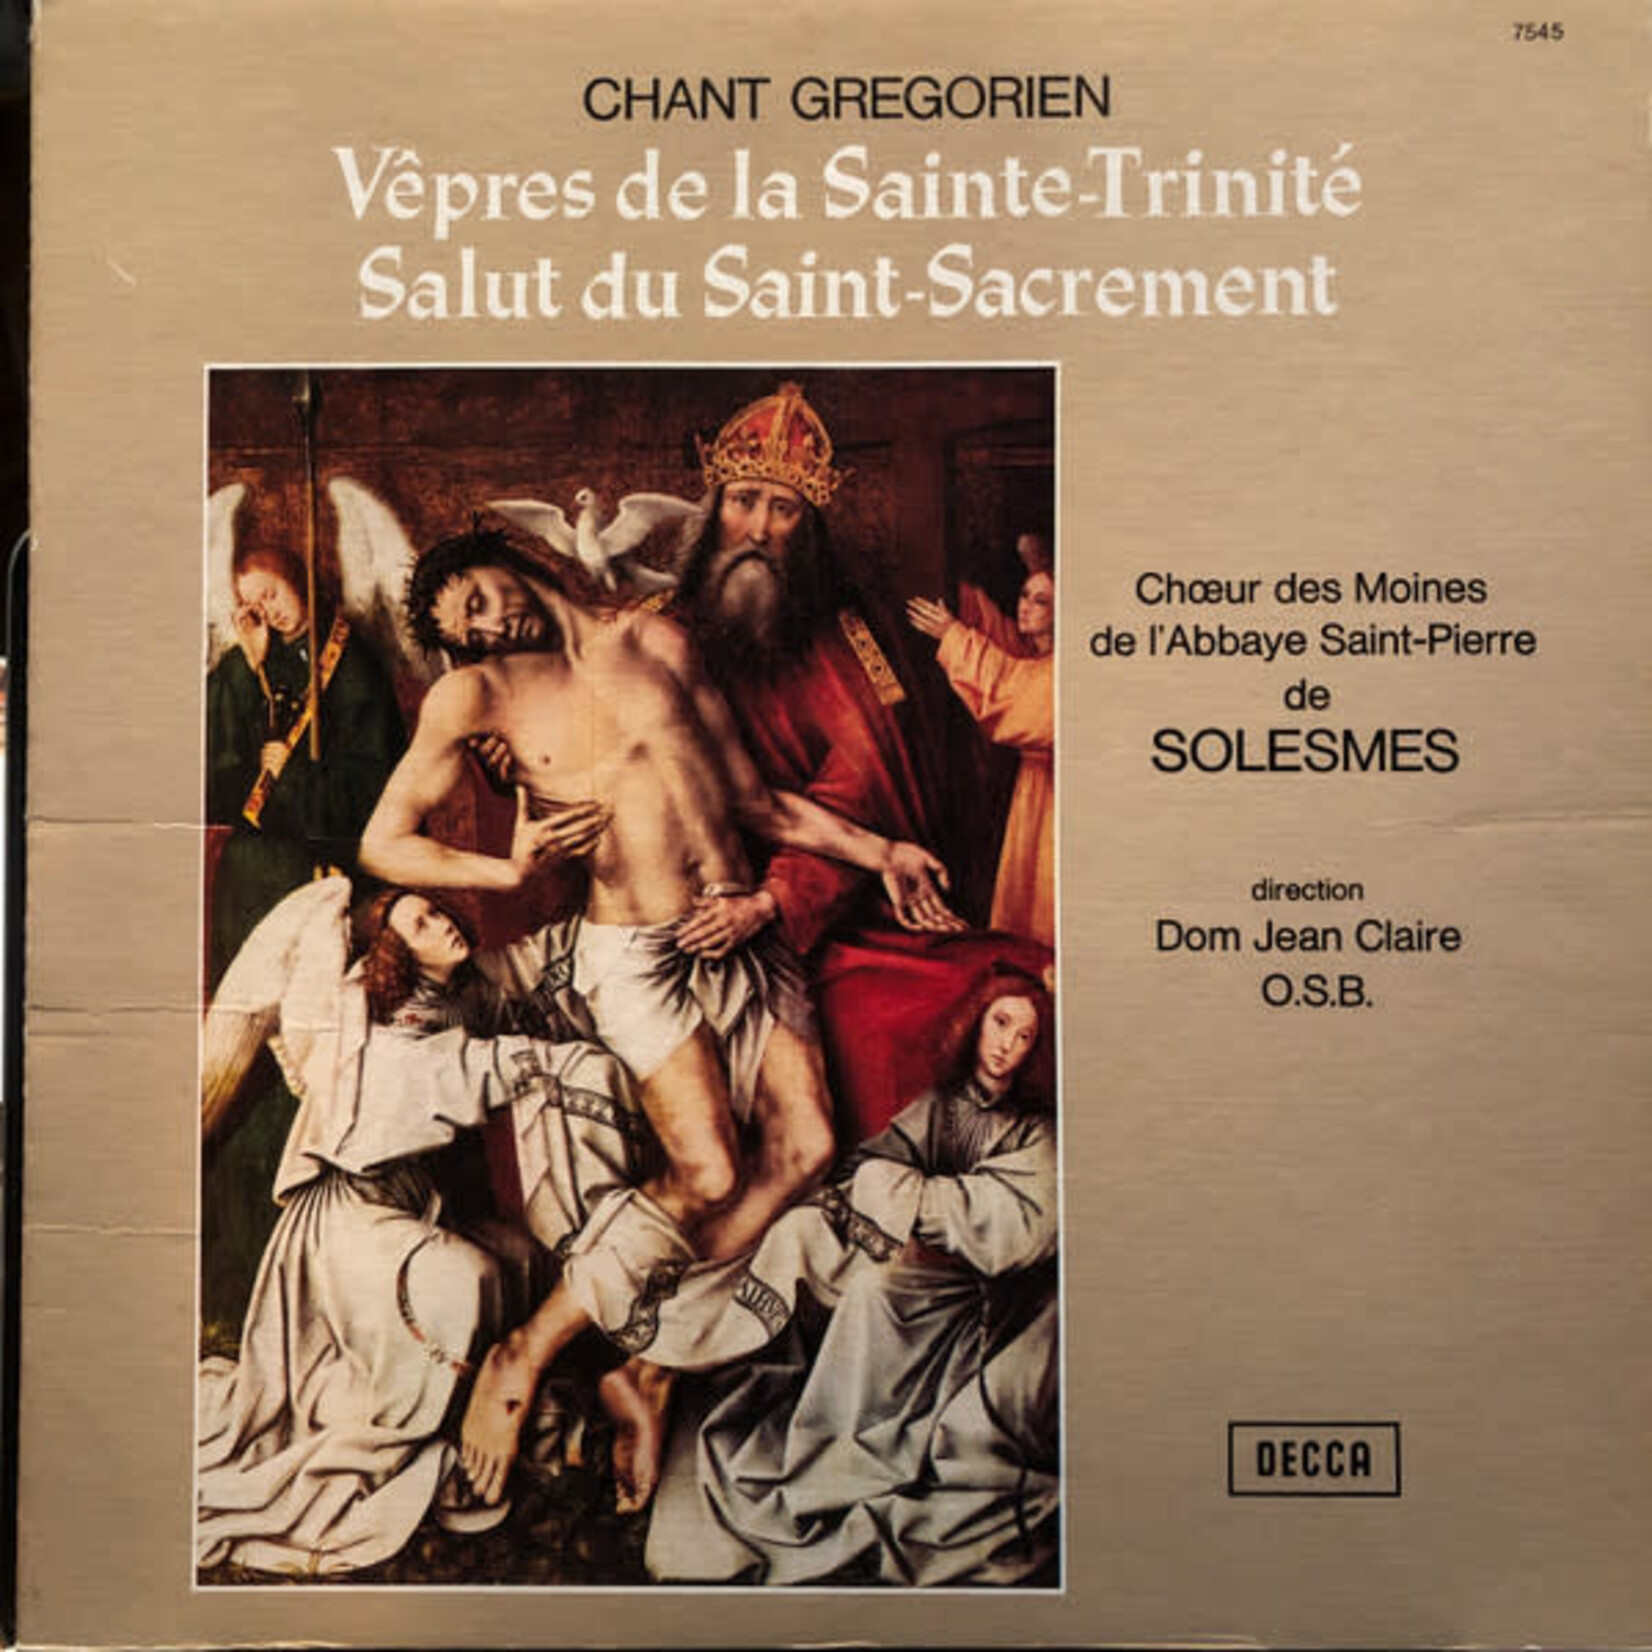 Chant Grégorien - Vepres de la Sainte-Trinité LP